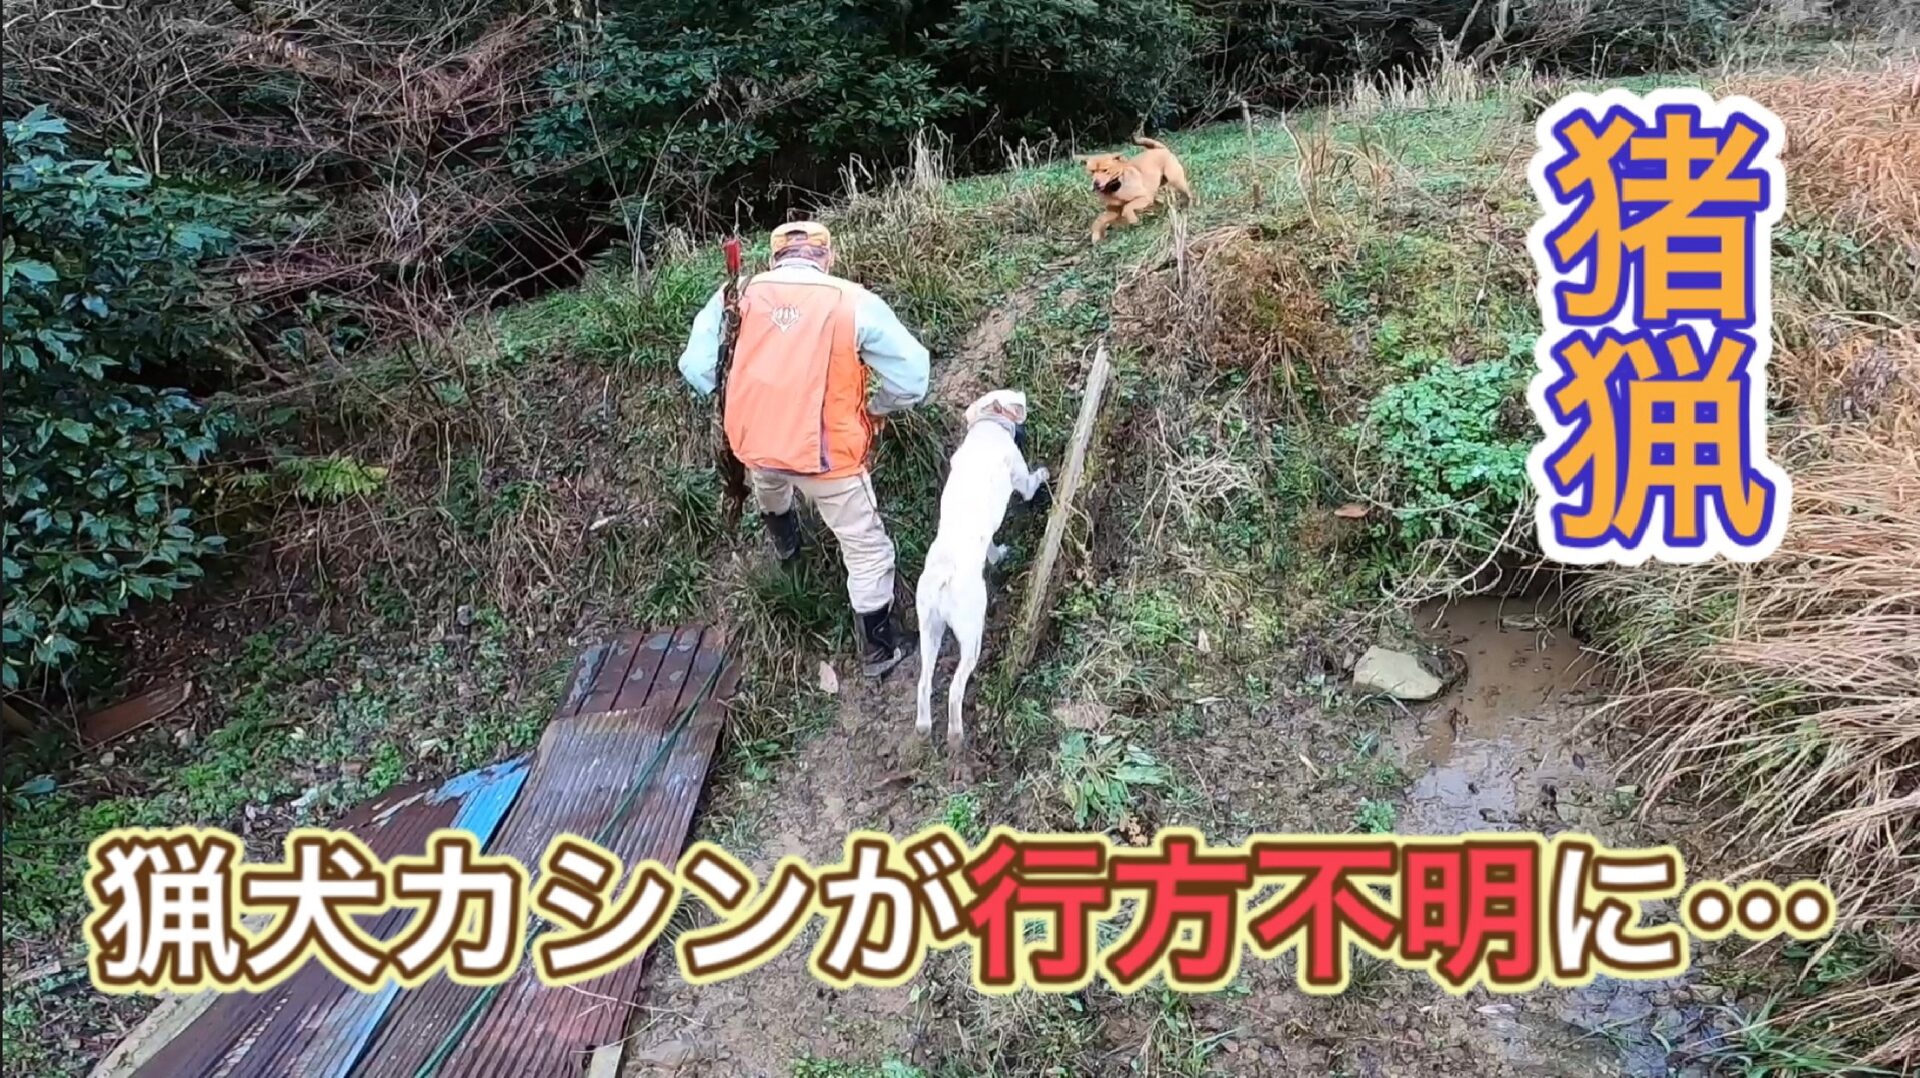 猟犬見習いカシンがイノシシを追いかけて行方不明に…。